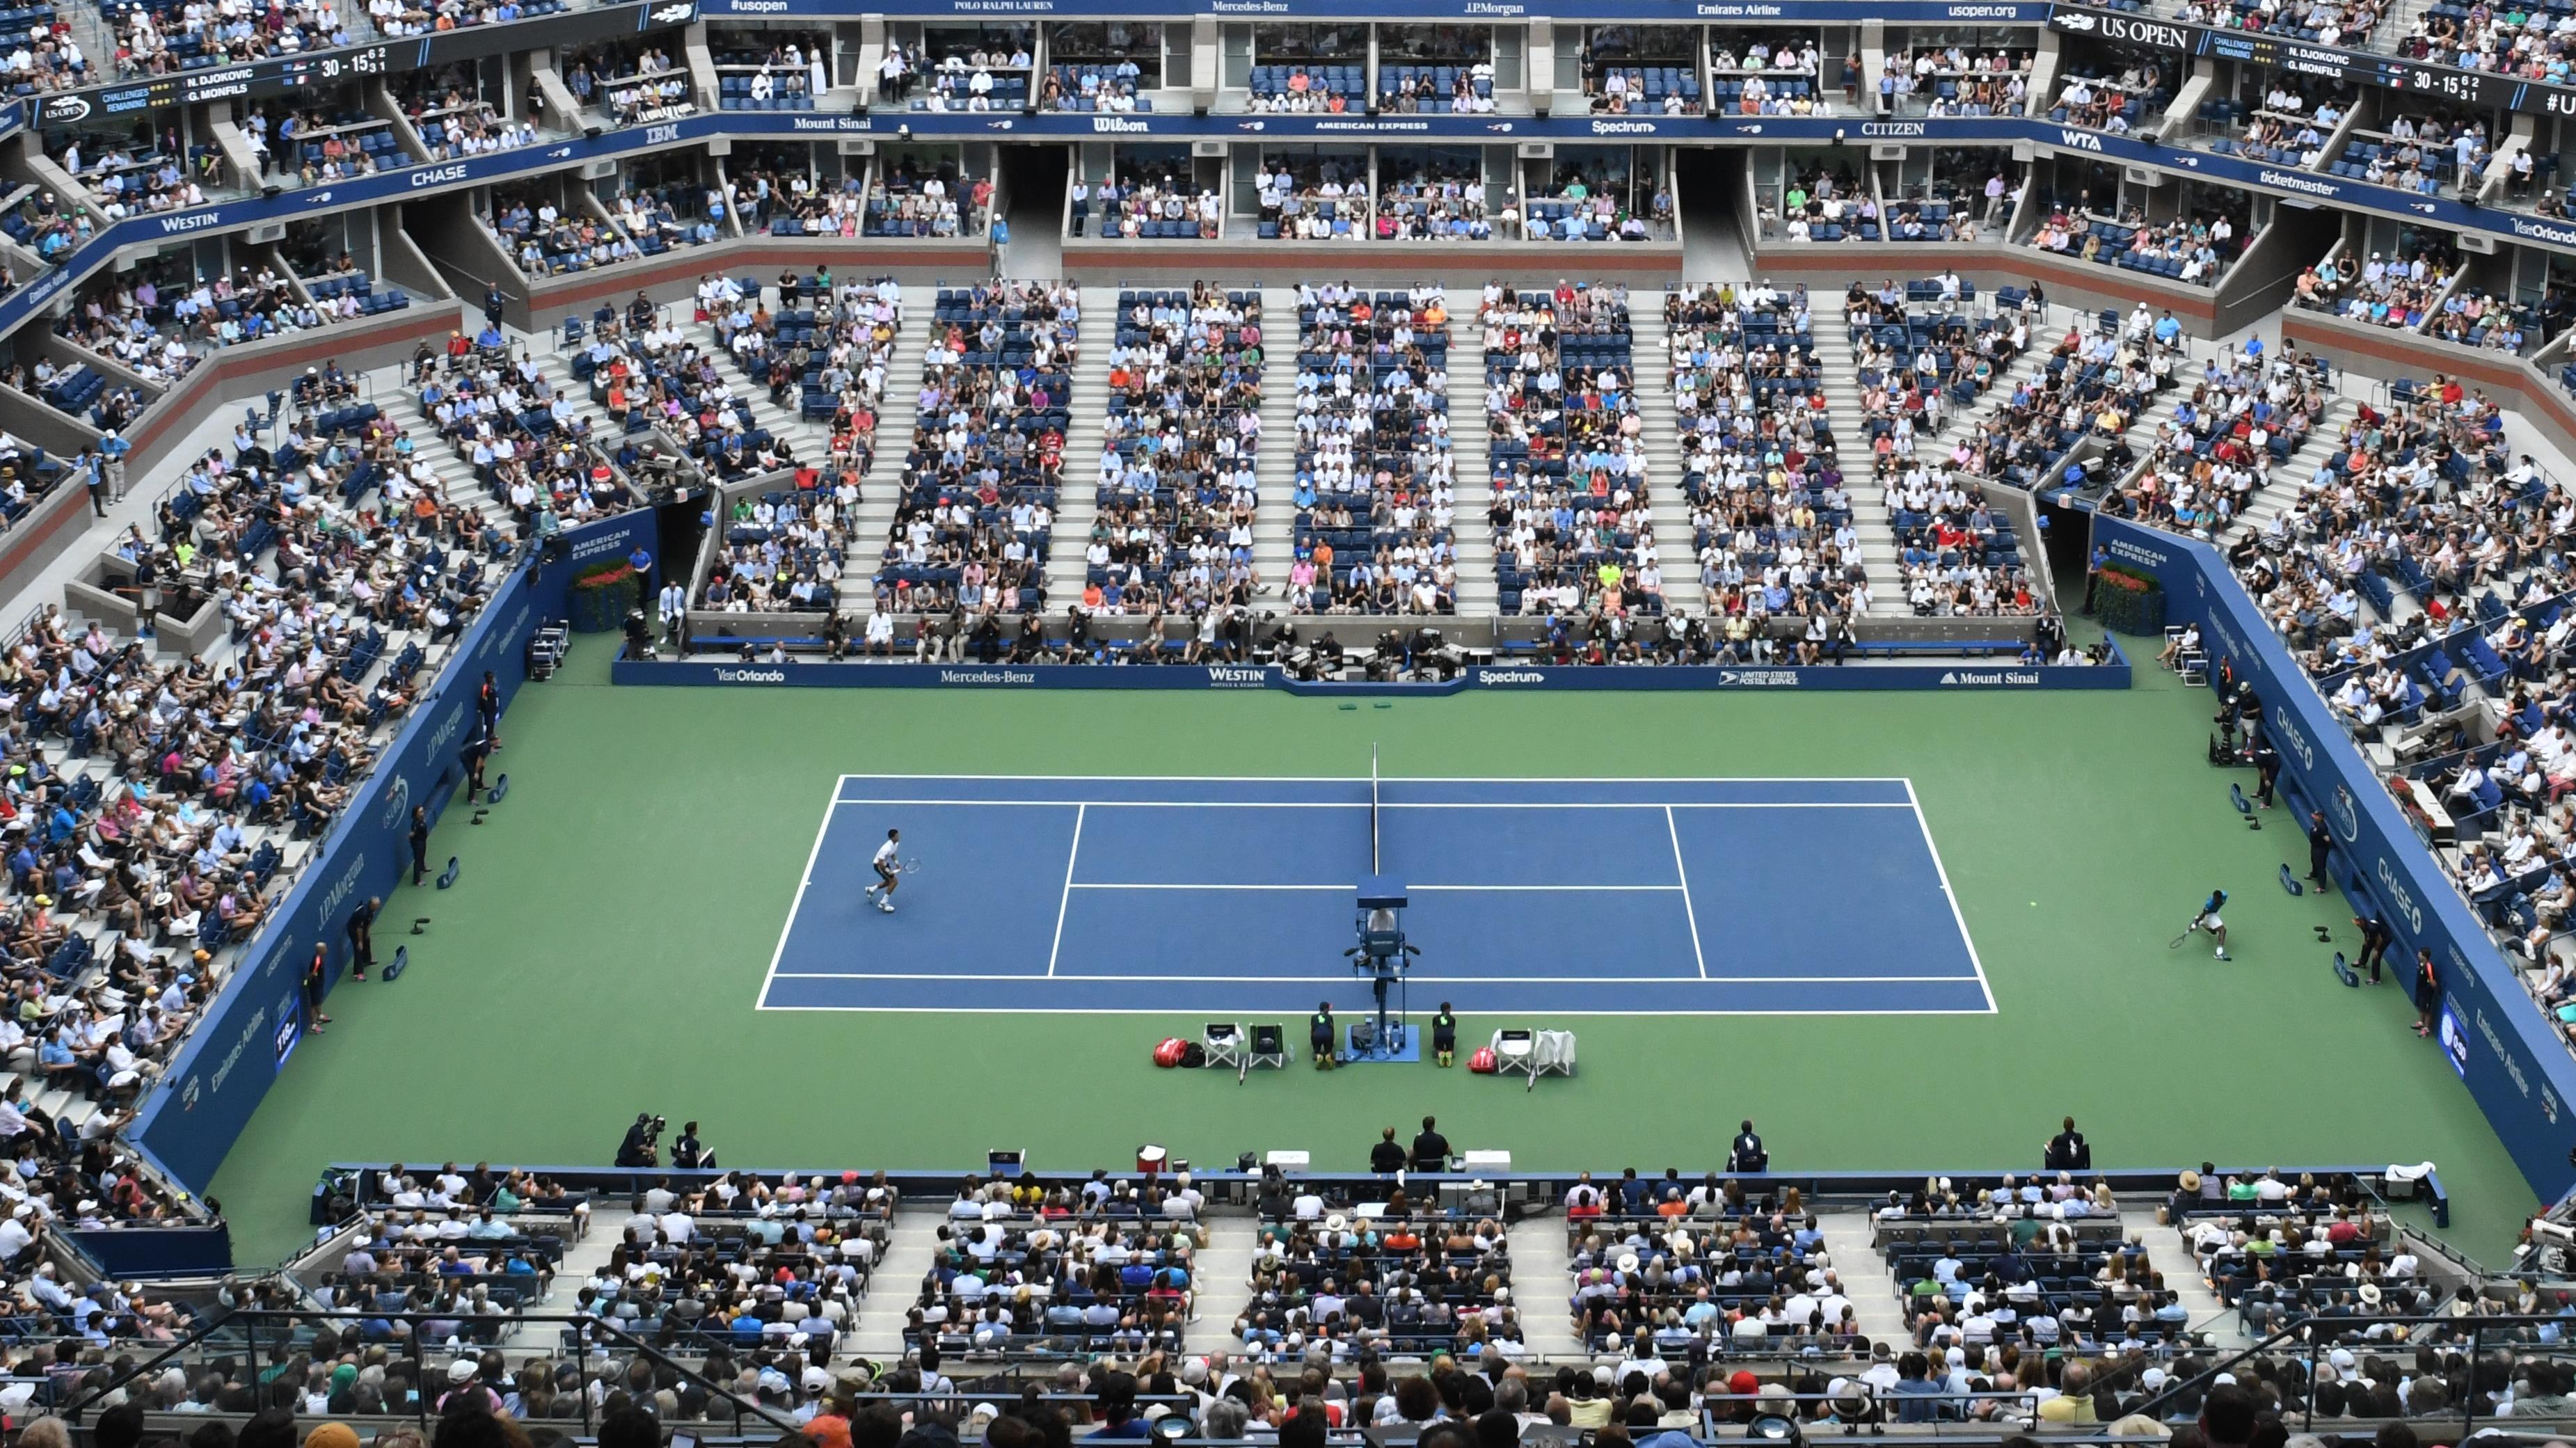 Laykold - nawierzchnia tenisowa stosowana na największych, światowych turniejach